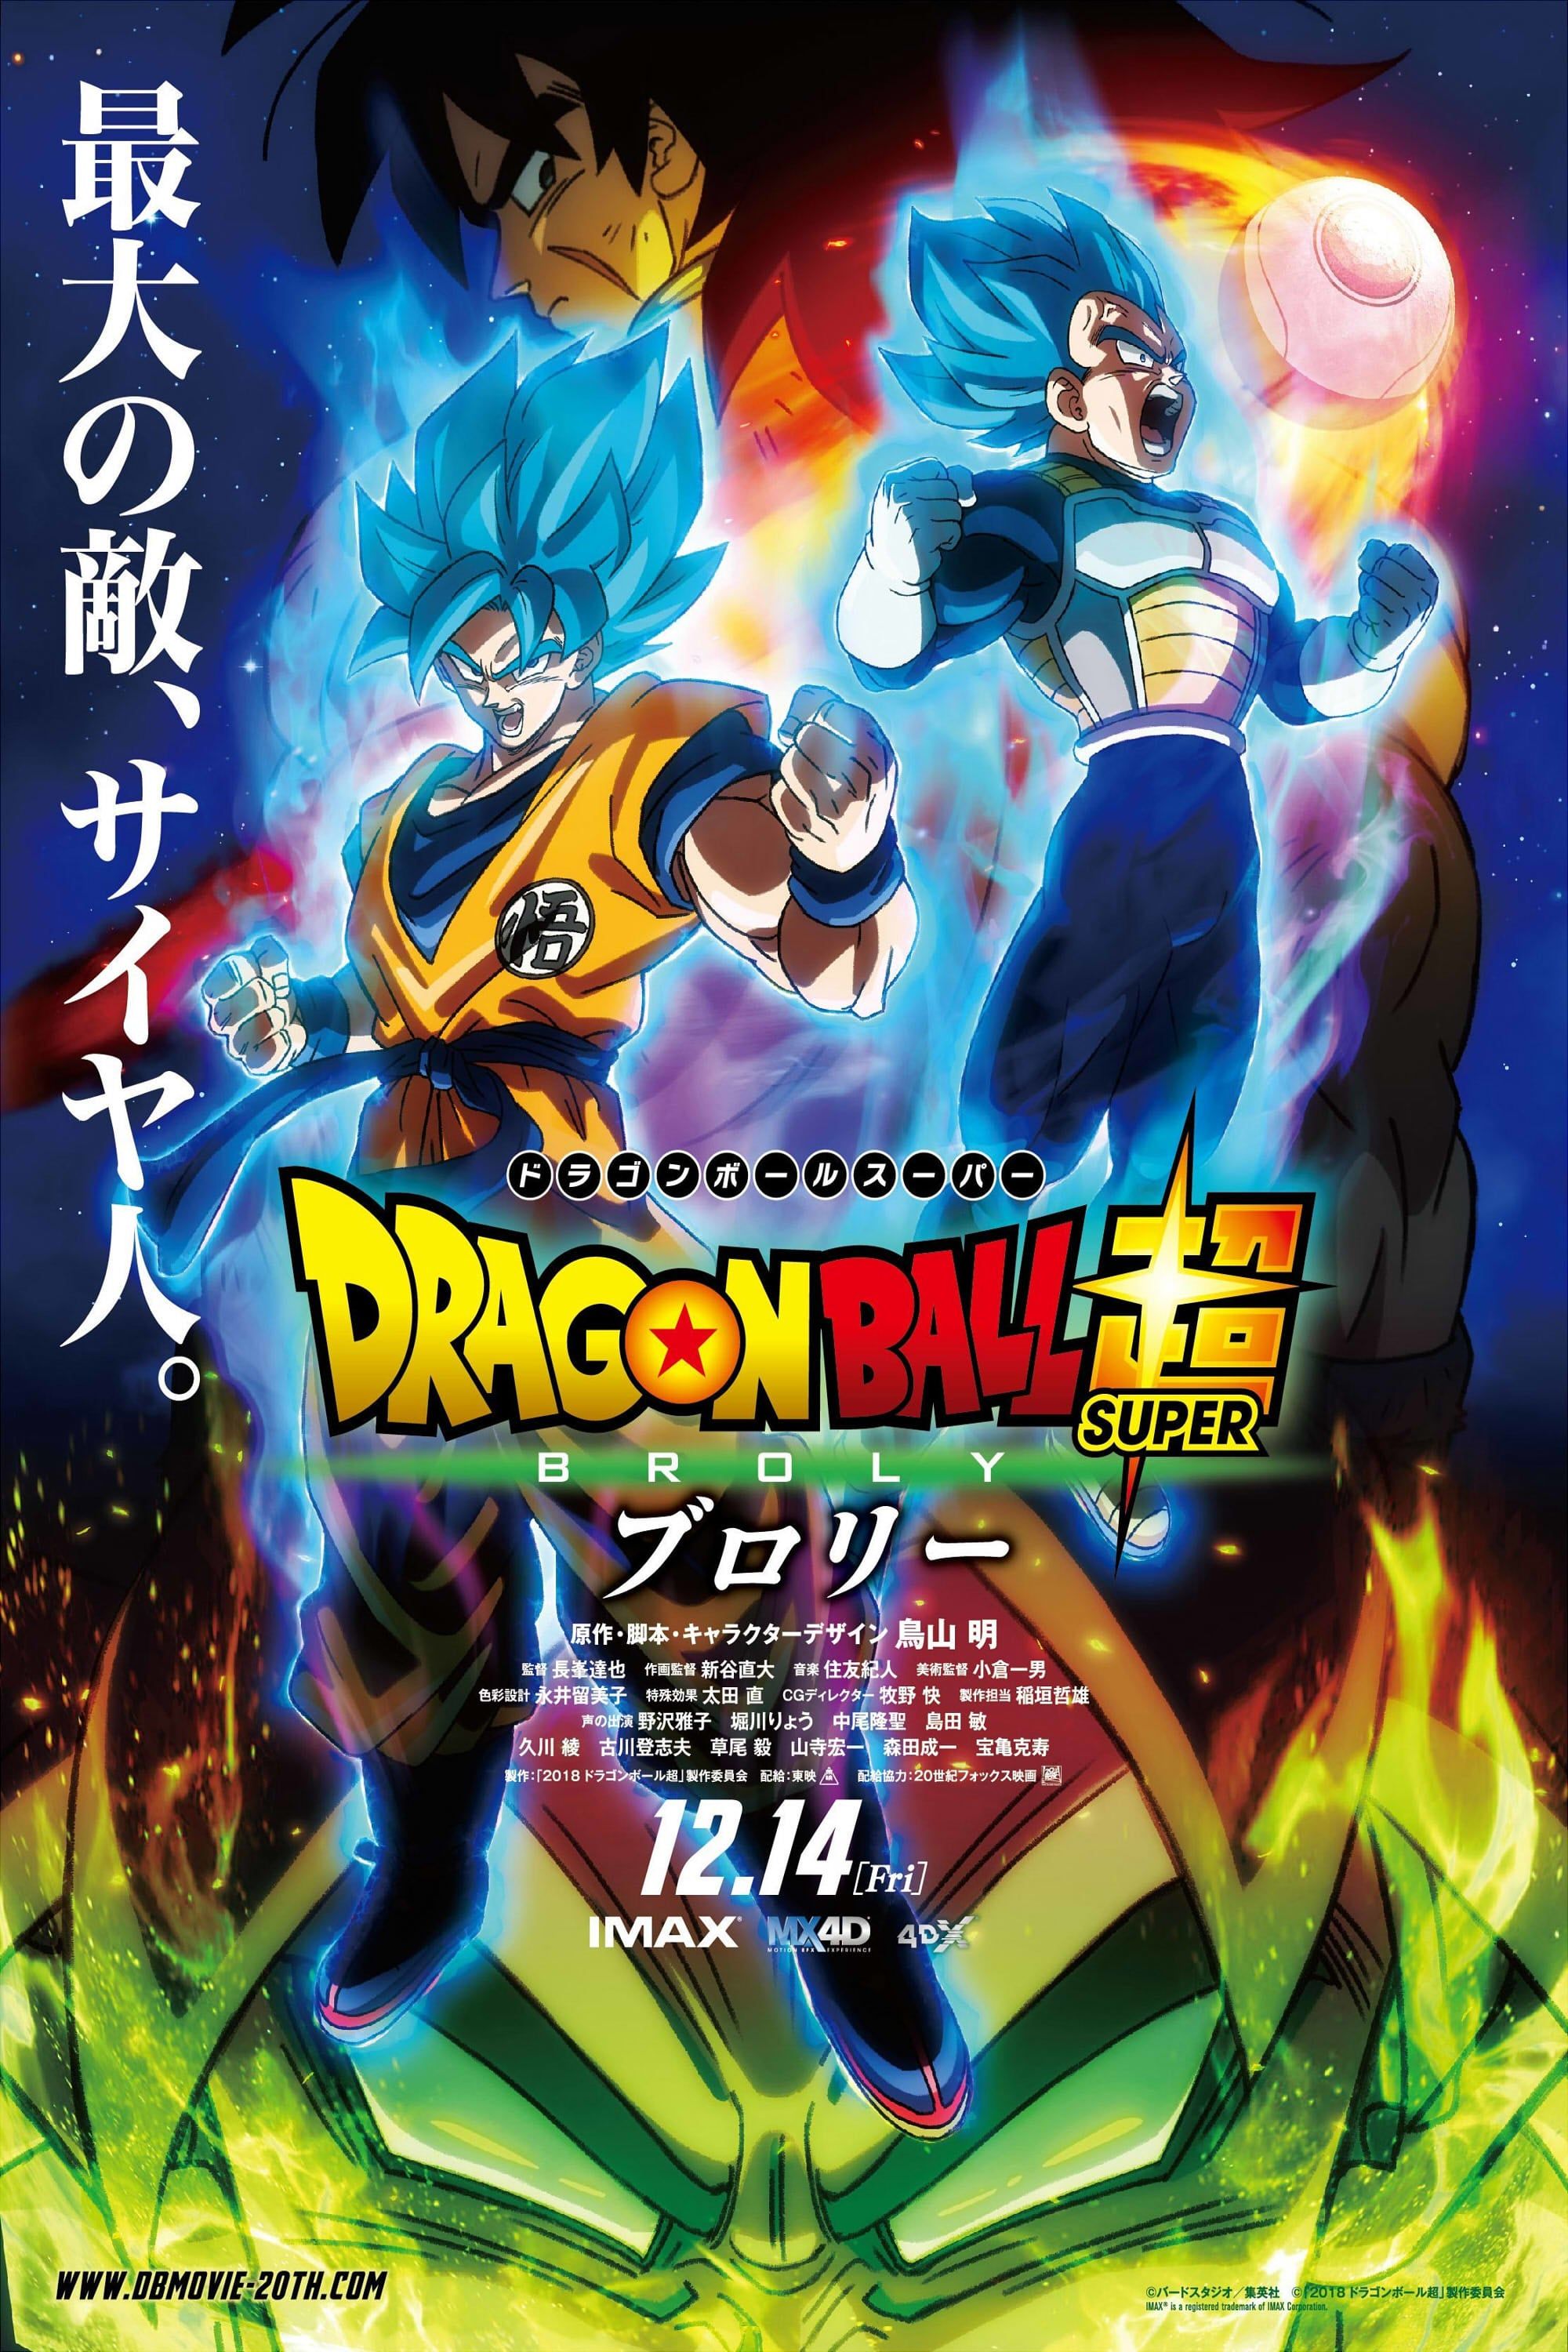 Download Video Goku Vs Frezza Sub Indo Dragon Ball Z